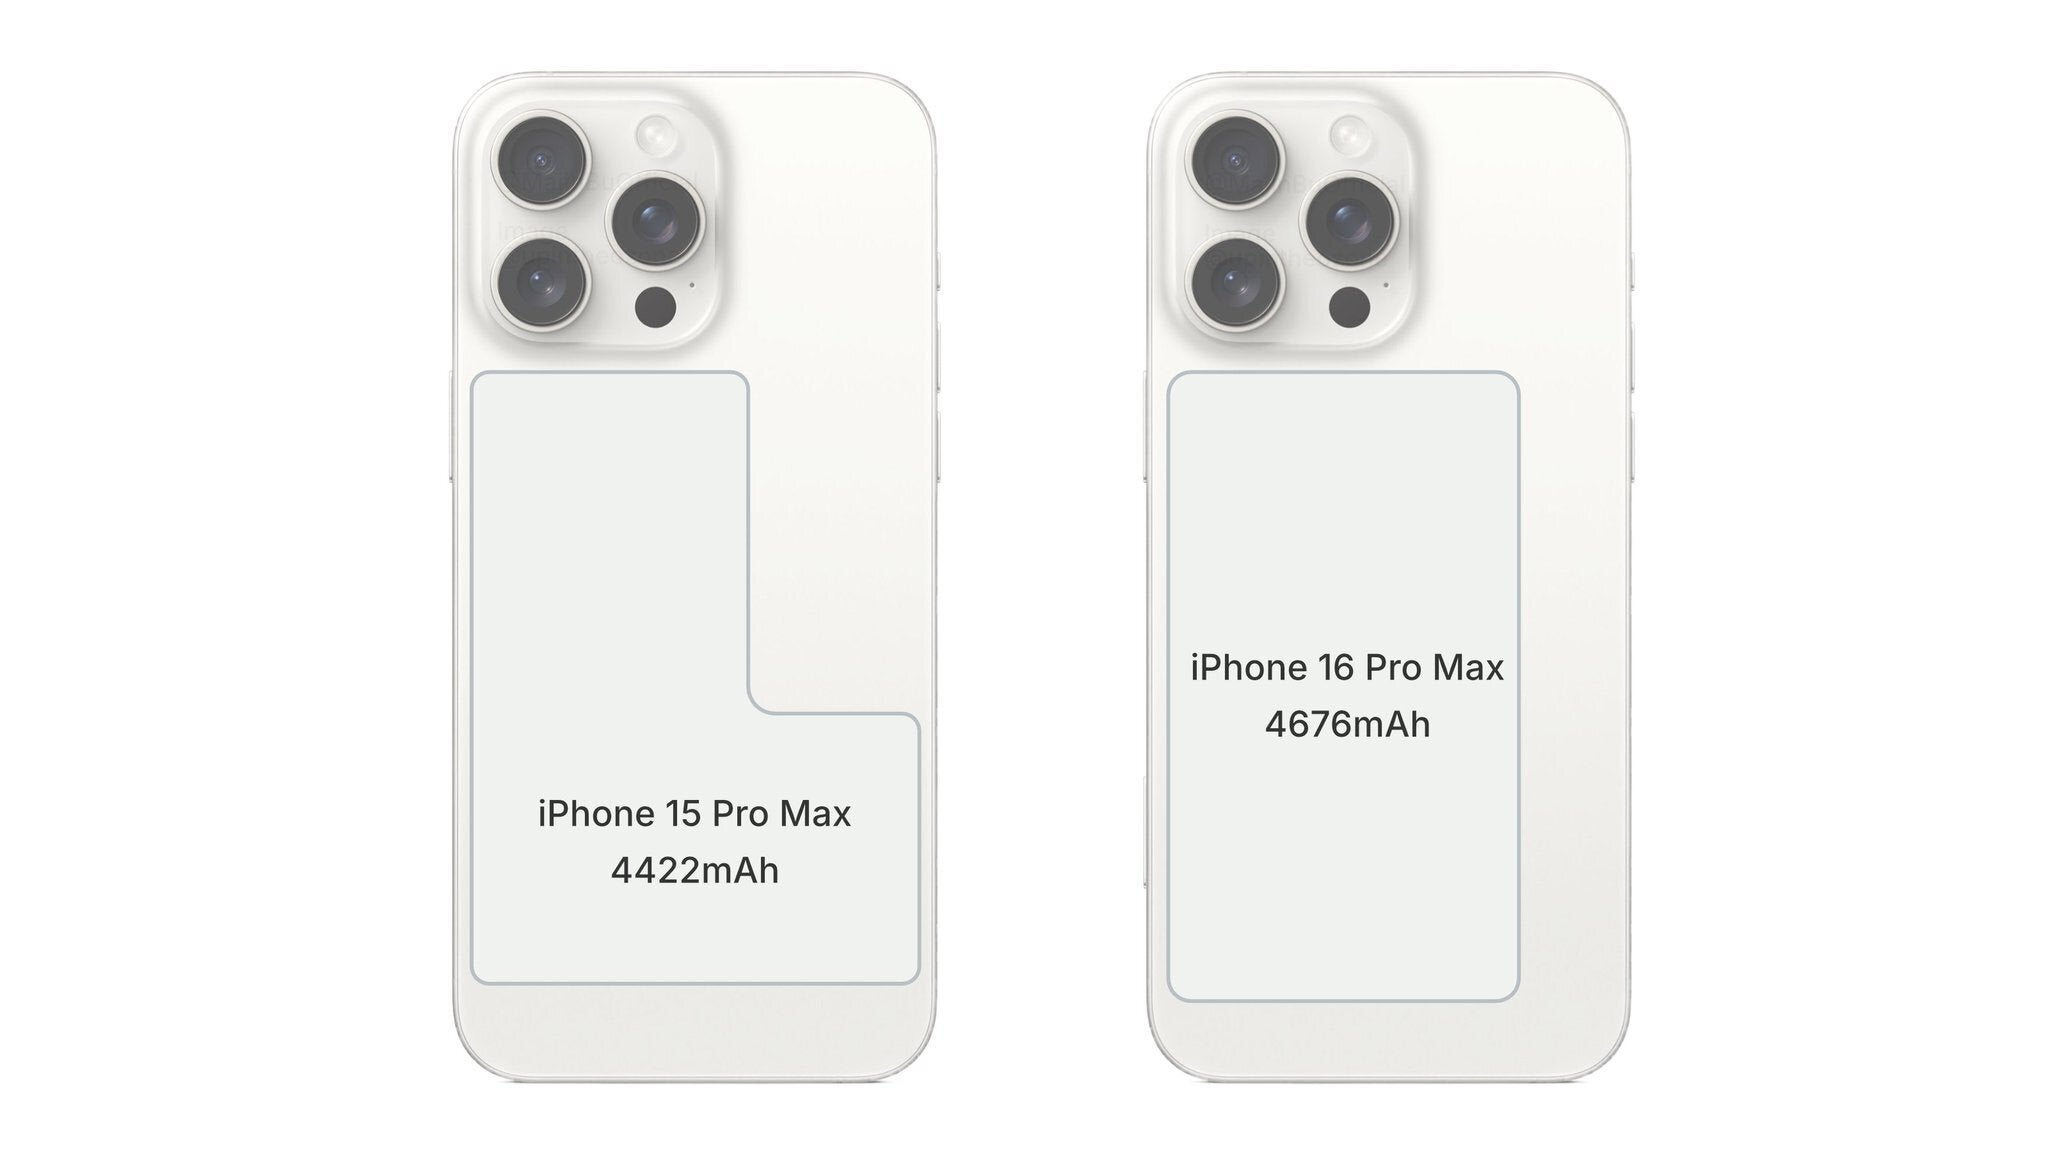 En son iPhone 15 ve iPhone 16 karşılaştırması pil kapasitelerindeki farkı gösteriyor